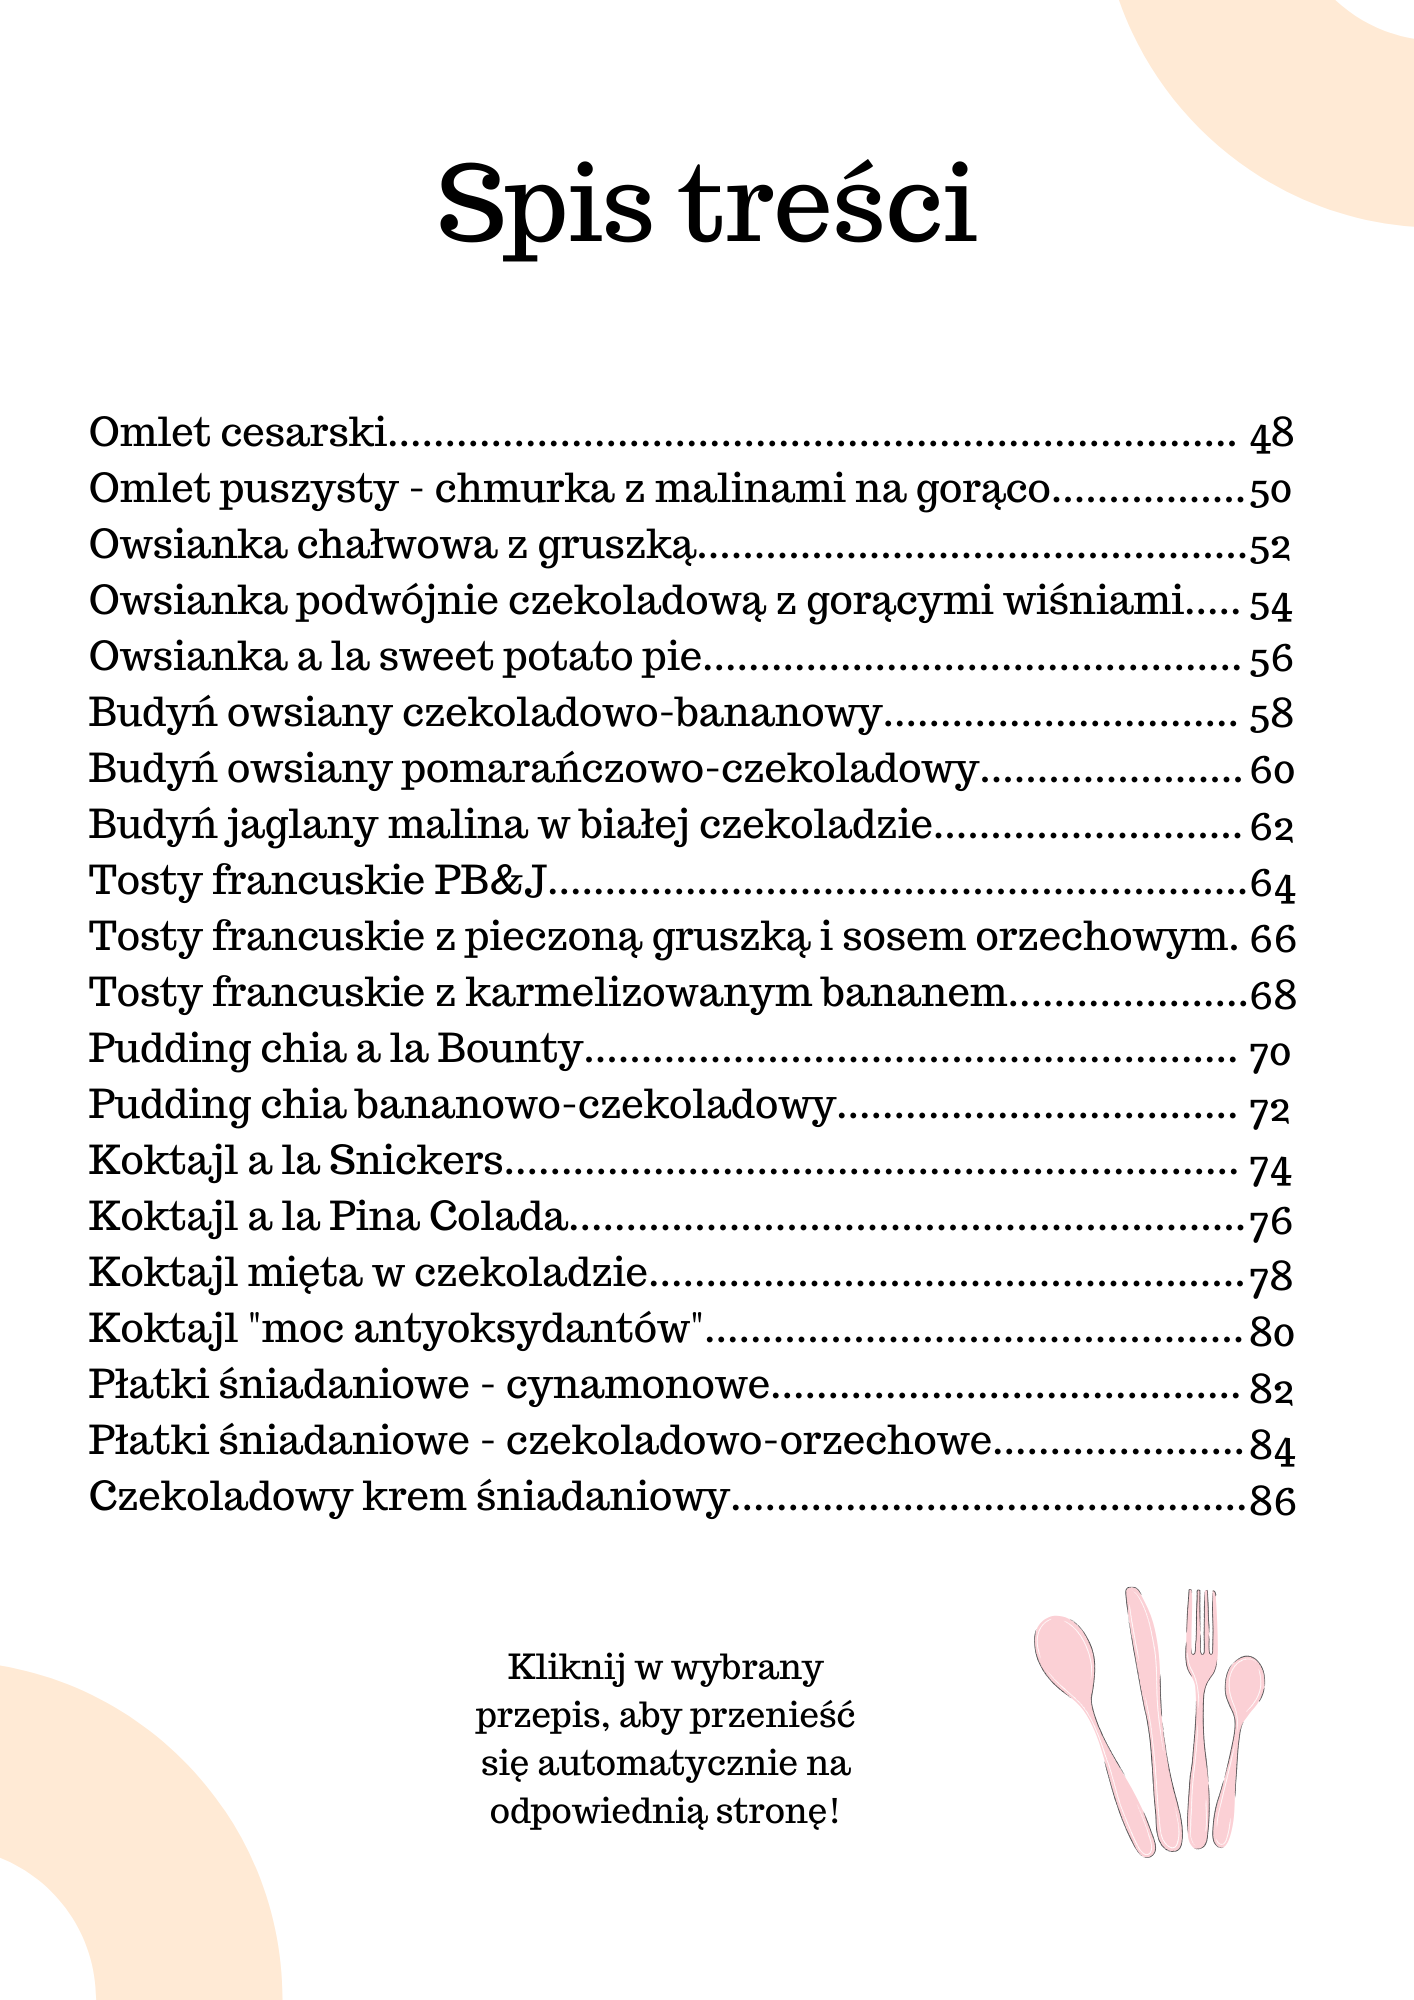 E-book "Słodkie poranki"